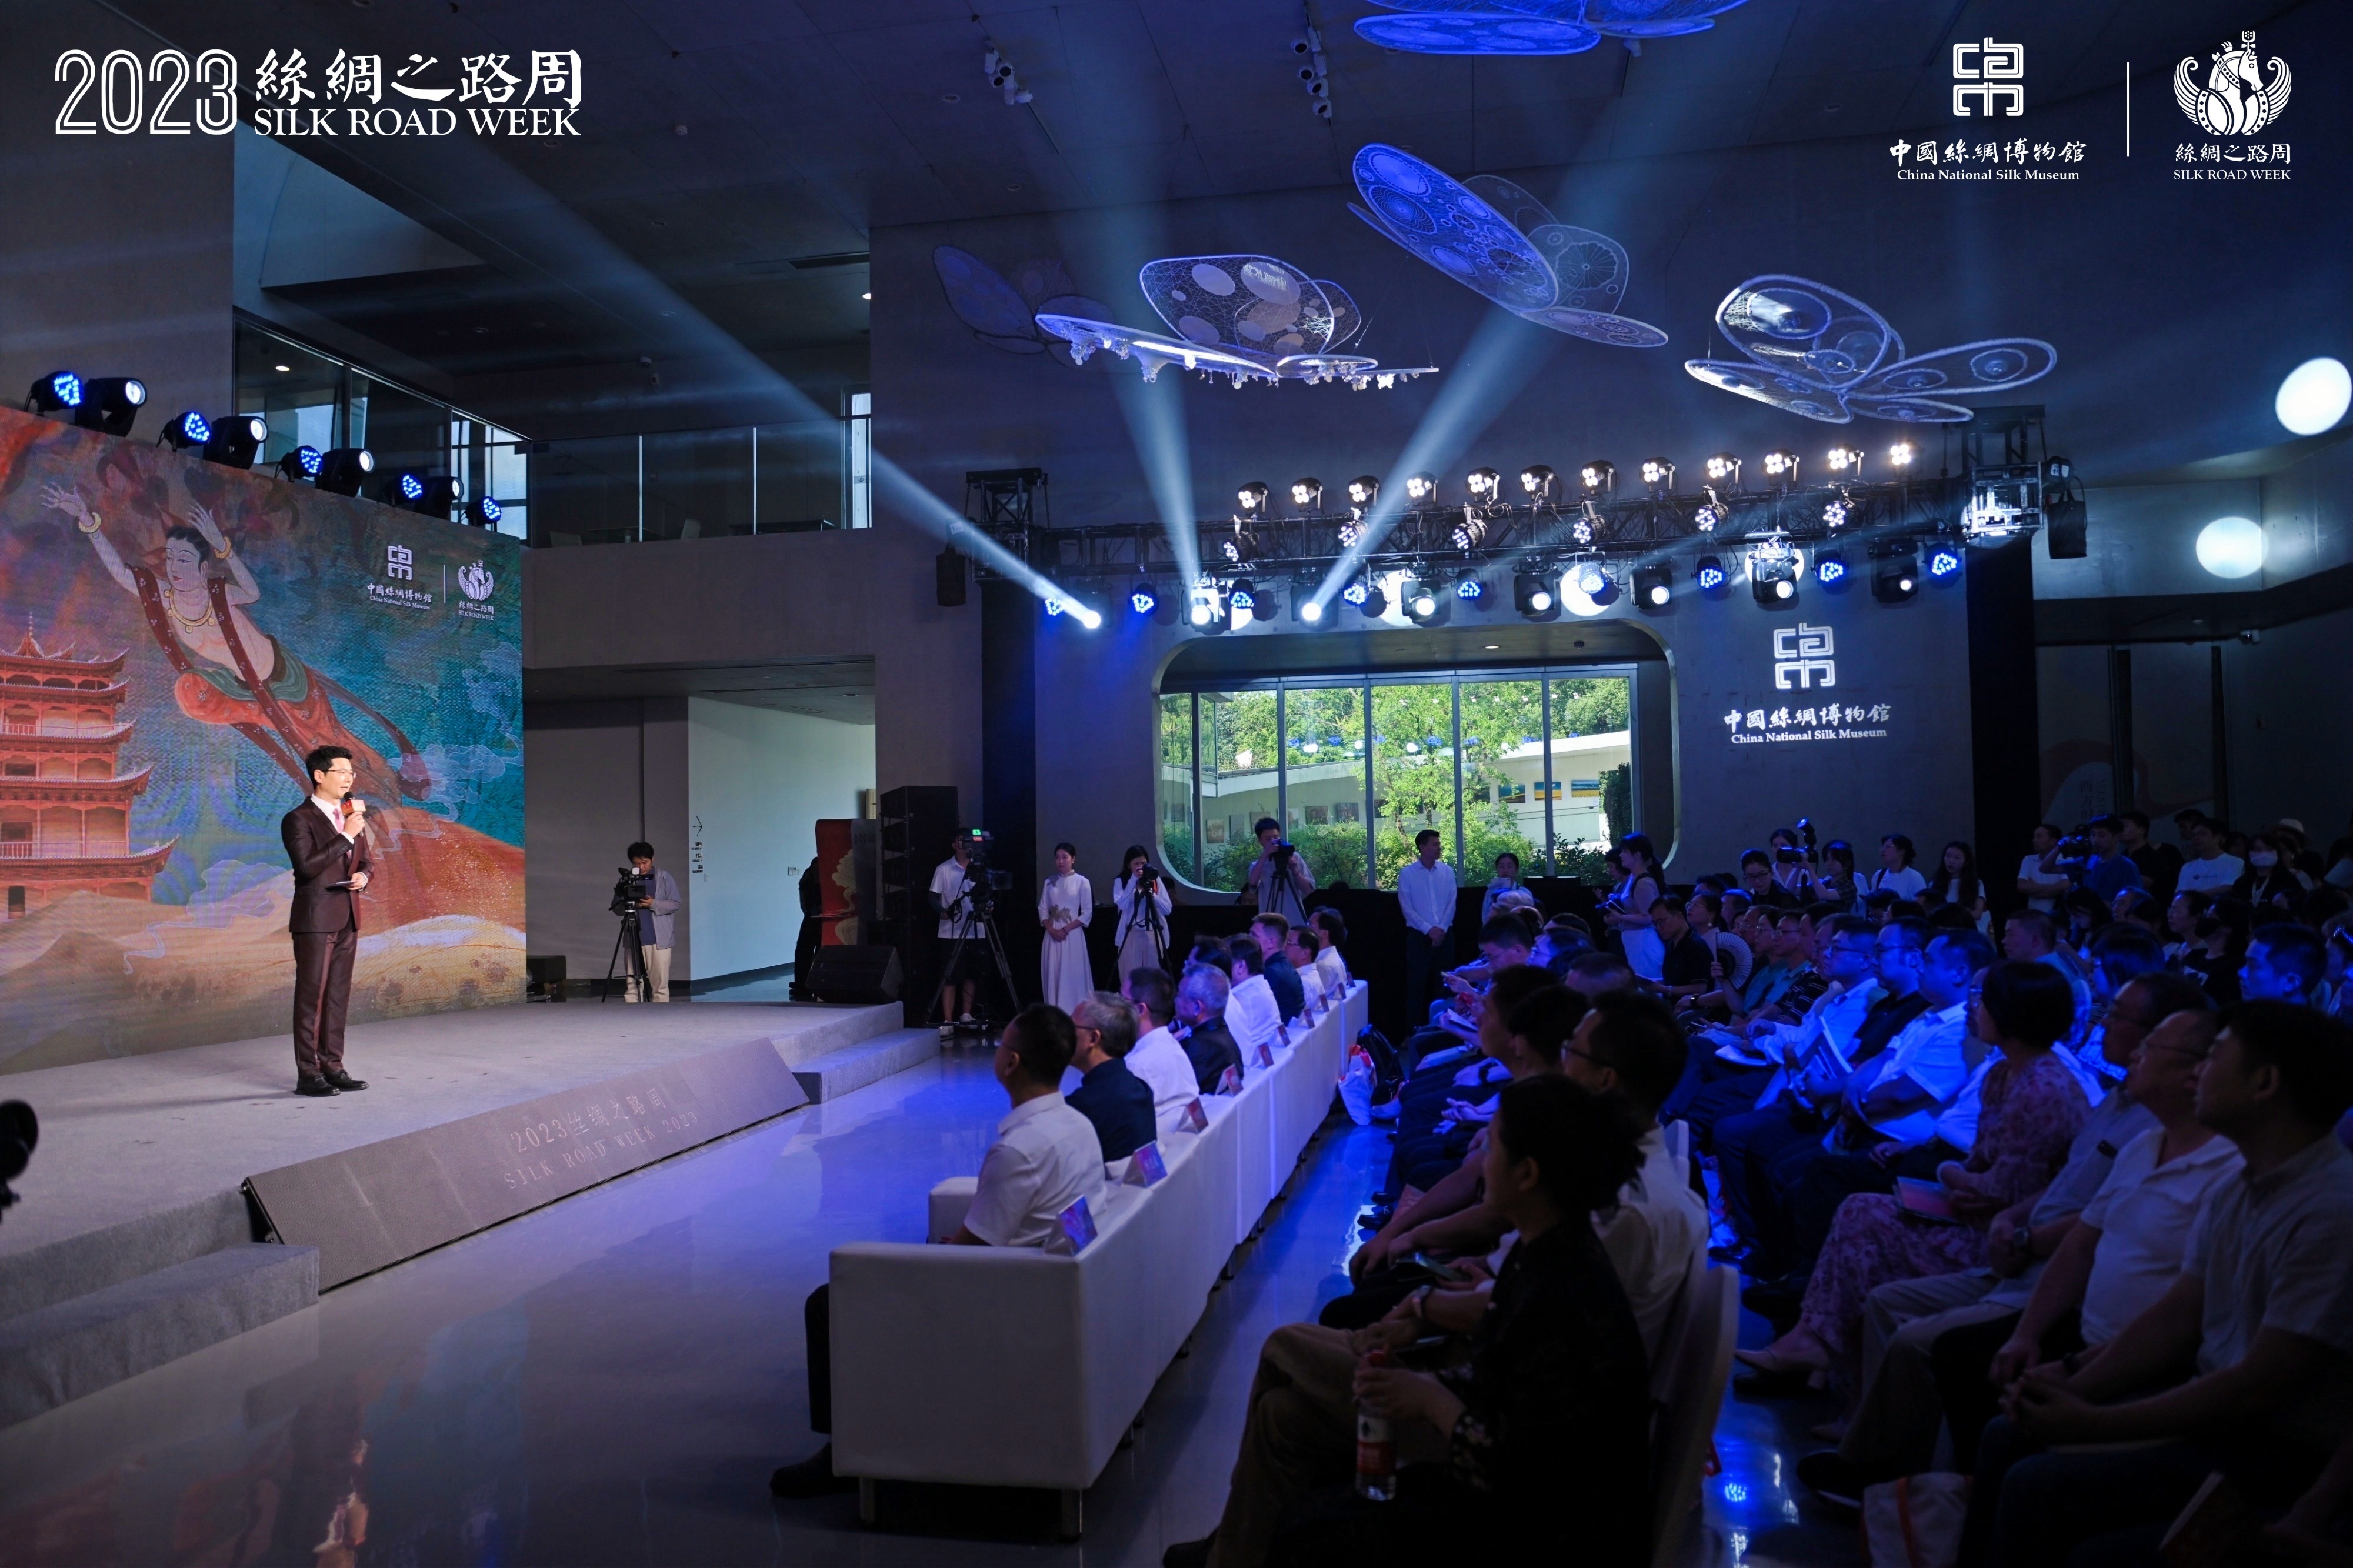 “2023絲綢之路周”在杭州開幕